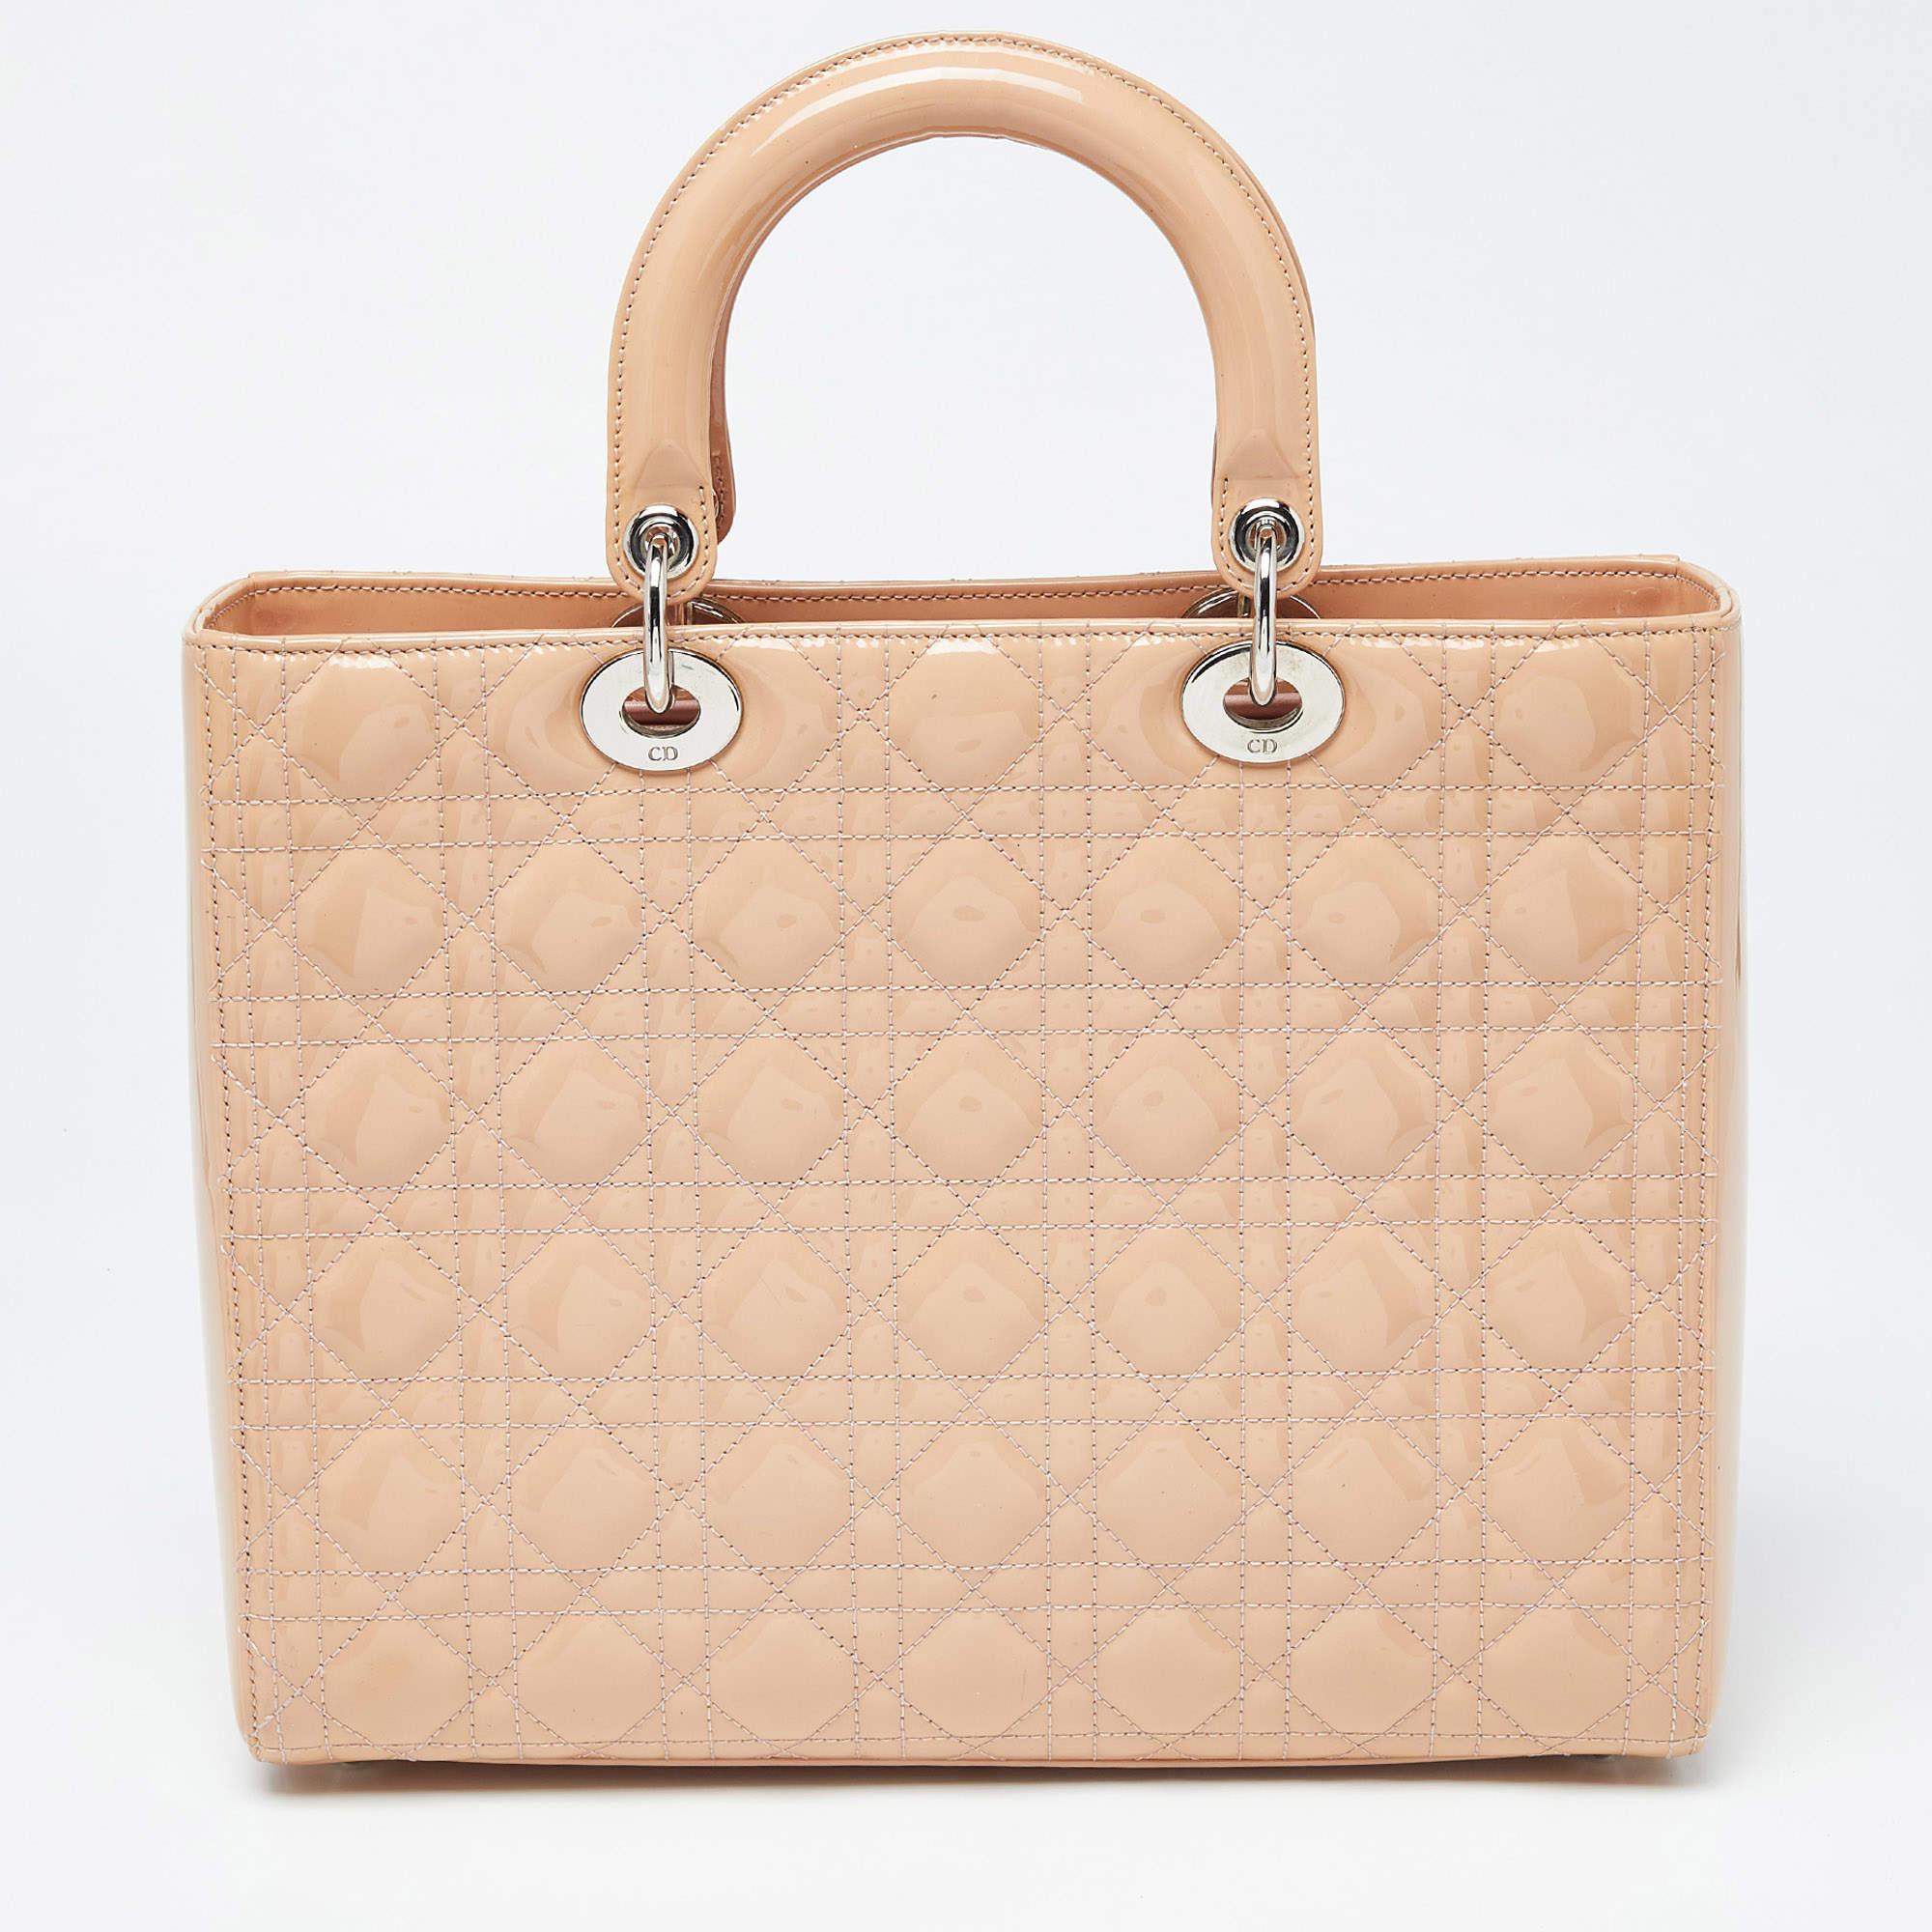 Un statut intemporel et un grand design caractérisent le fourre-tout Lady Dior. Il s'agit d'un sac emblématique dans lequel les gens continuent d'investir à ce jour. Cette beauté classique est réalisée en cuir verni Cannage beige. Le sac est doté